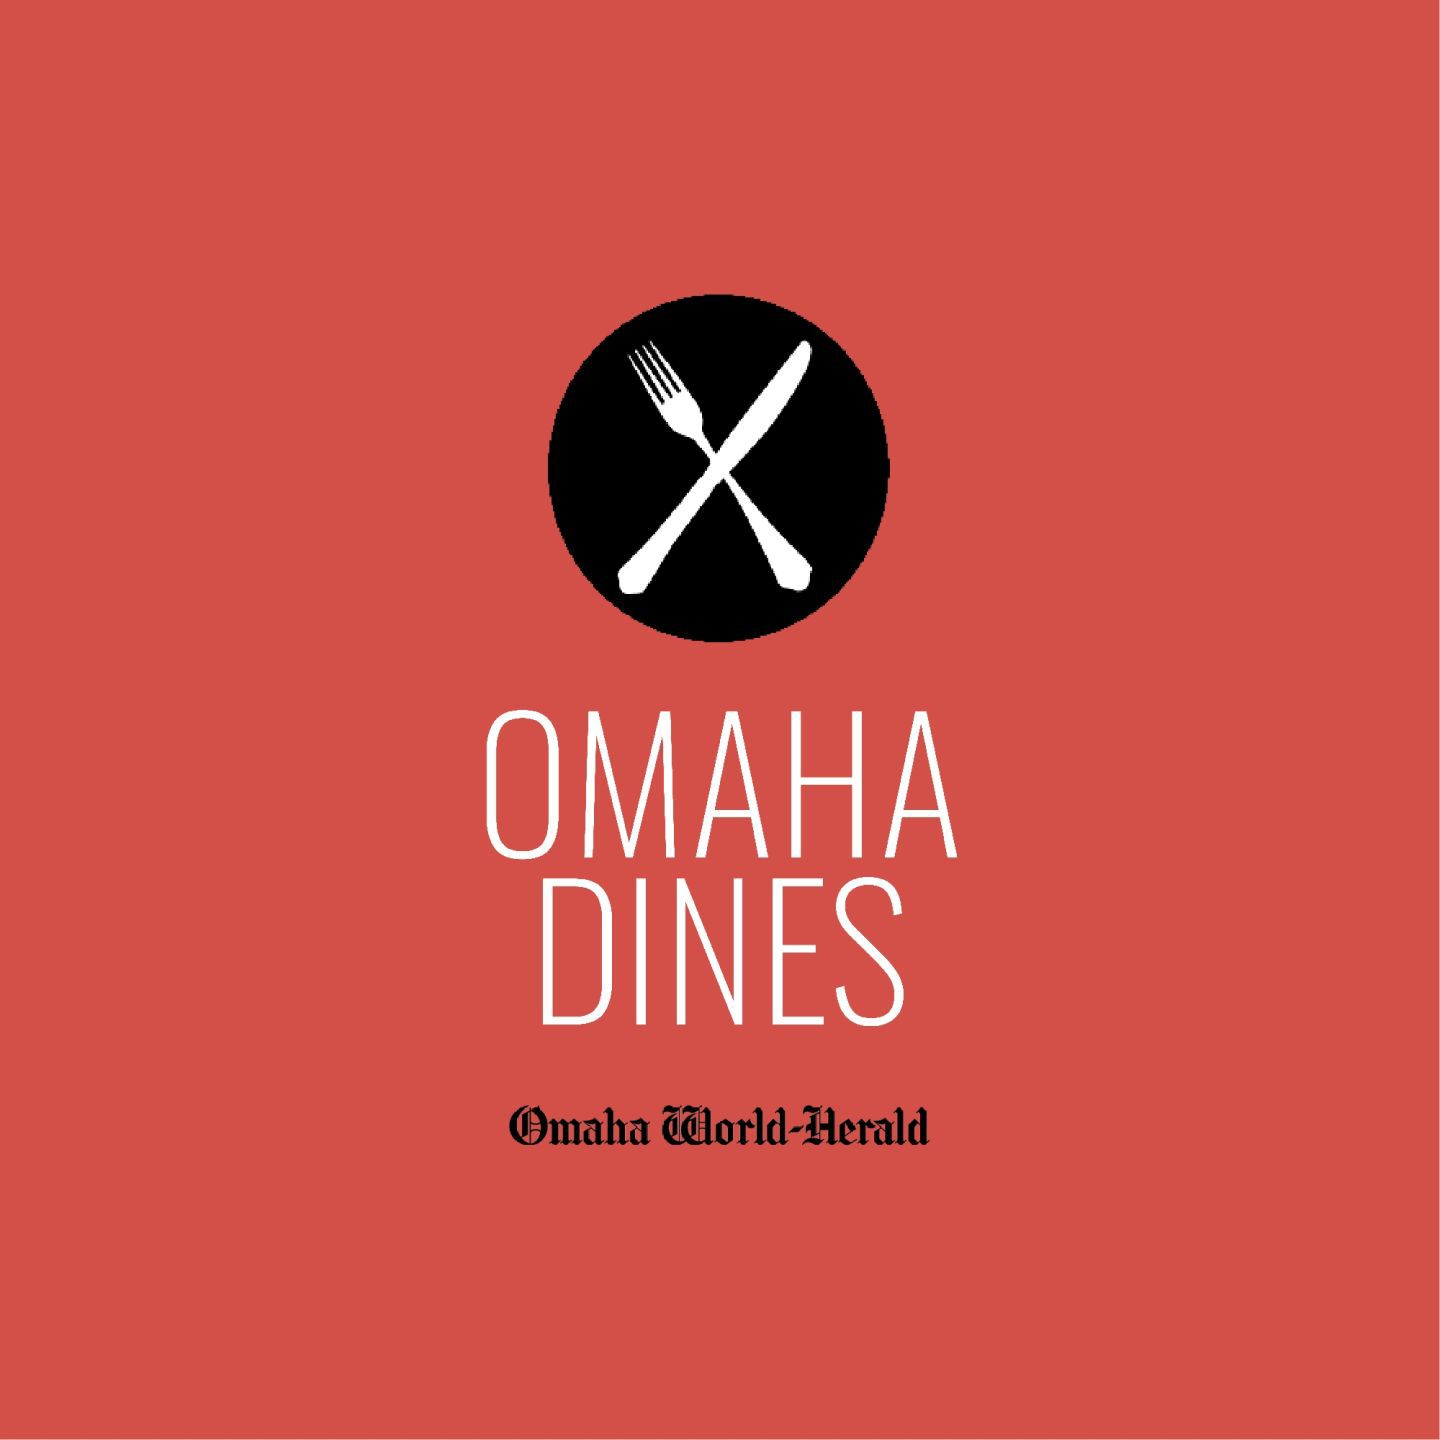 The best steaks in Omaha, Nebraska. - Feb. 25